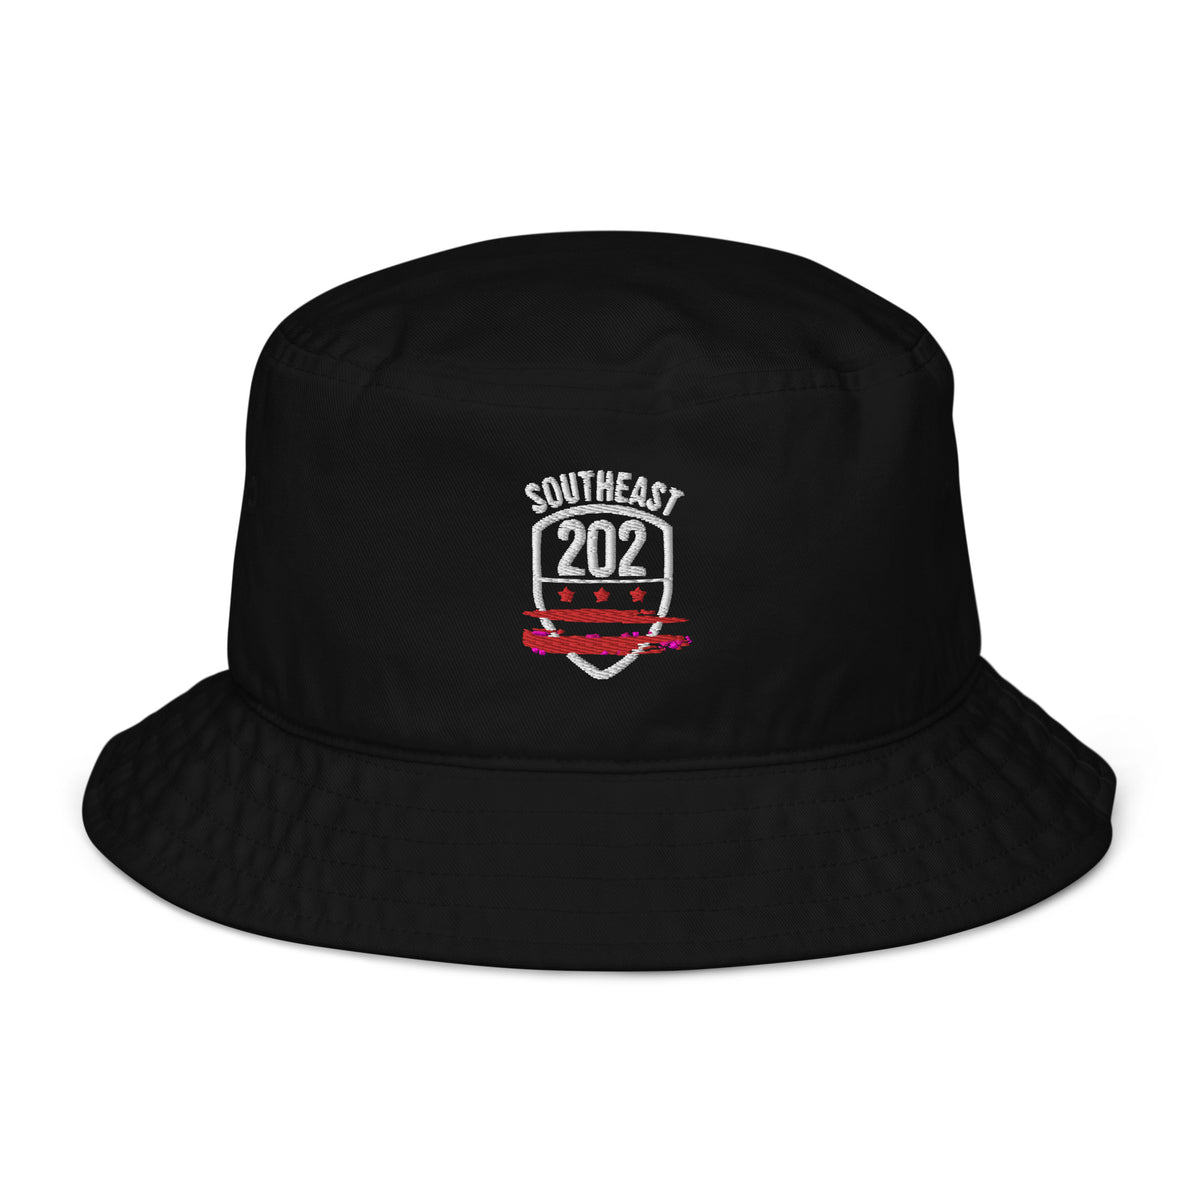 'SOUTHEAST/202' Black Bucket Hat